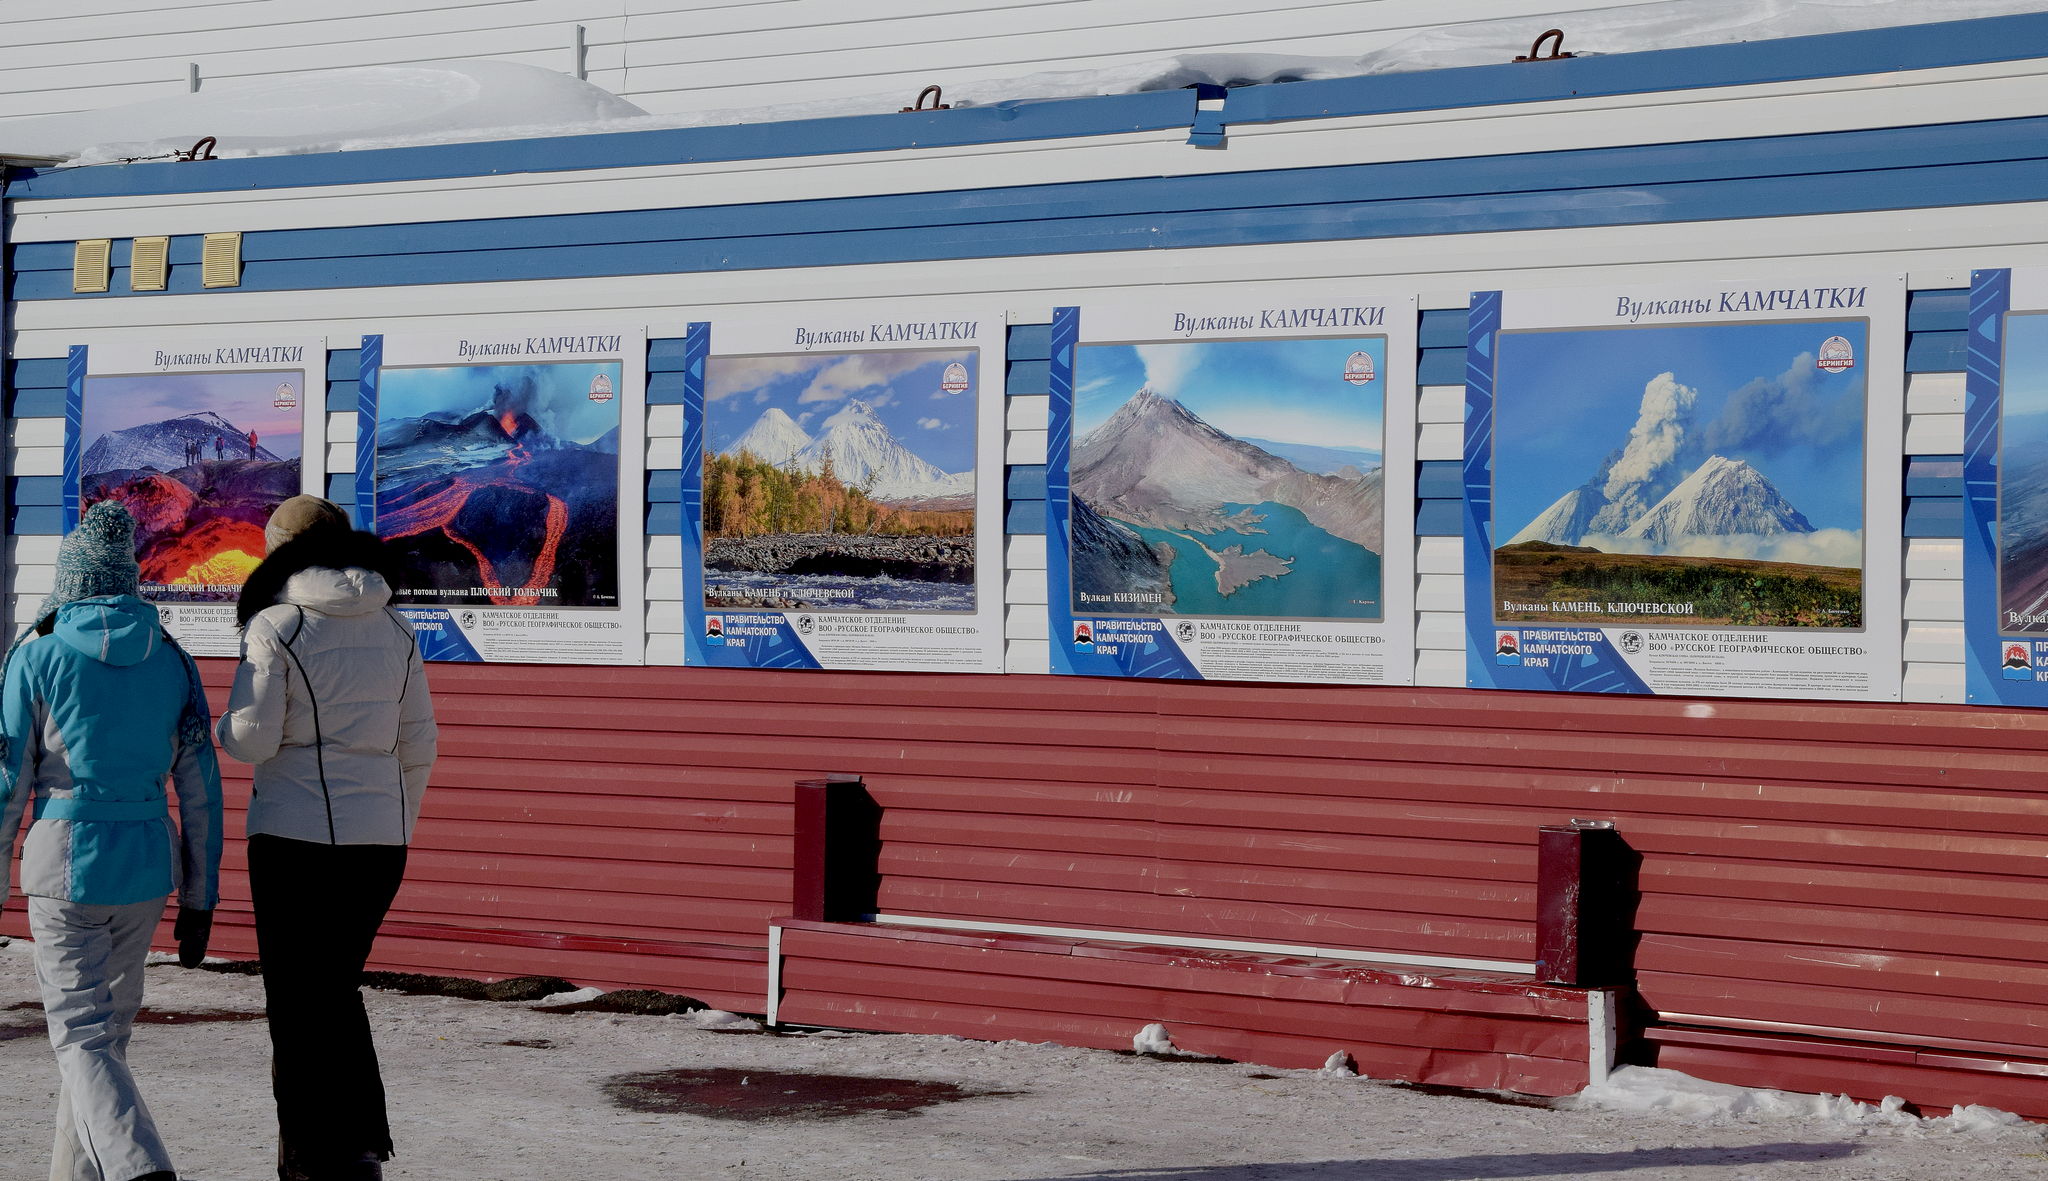 Фотовыставка "Вулканы Камчатки"